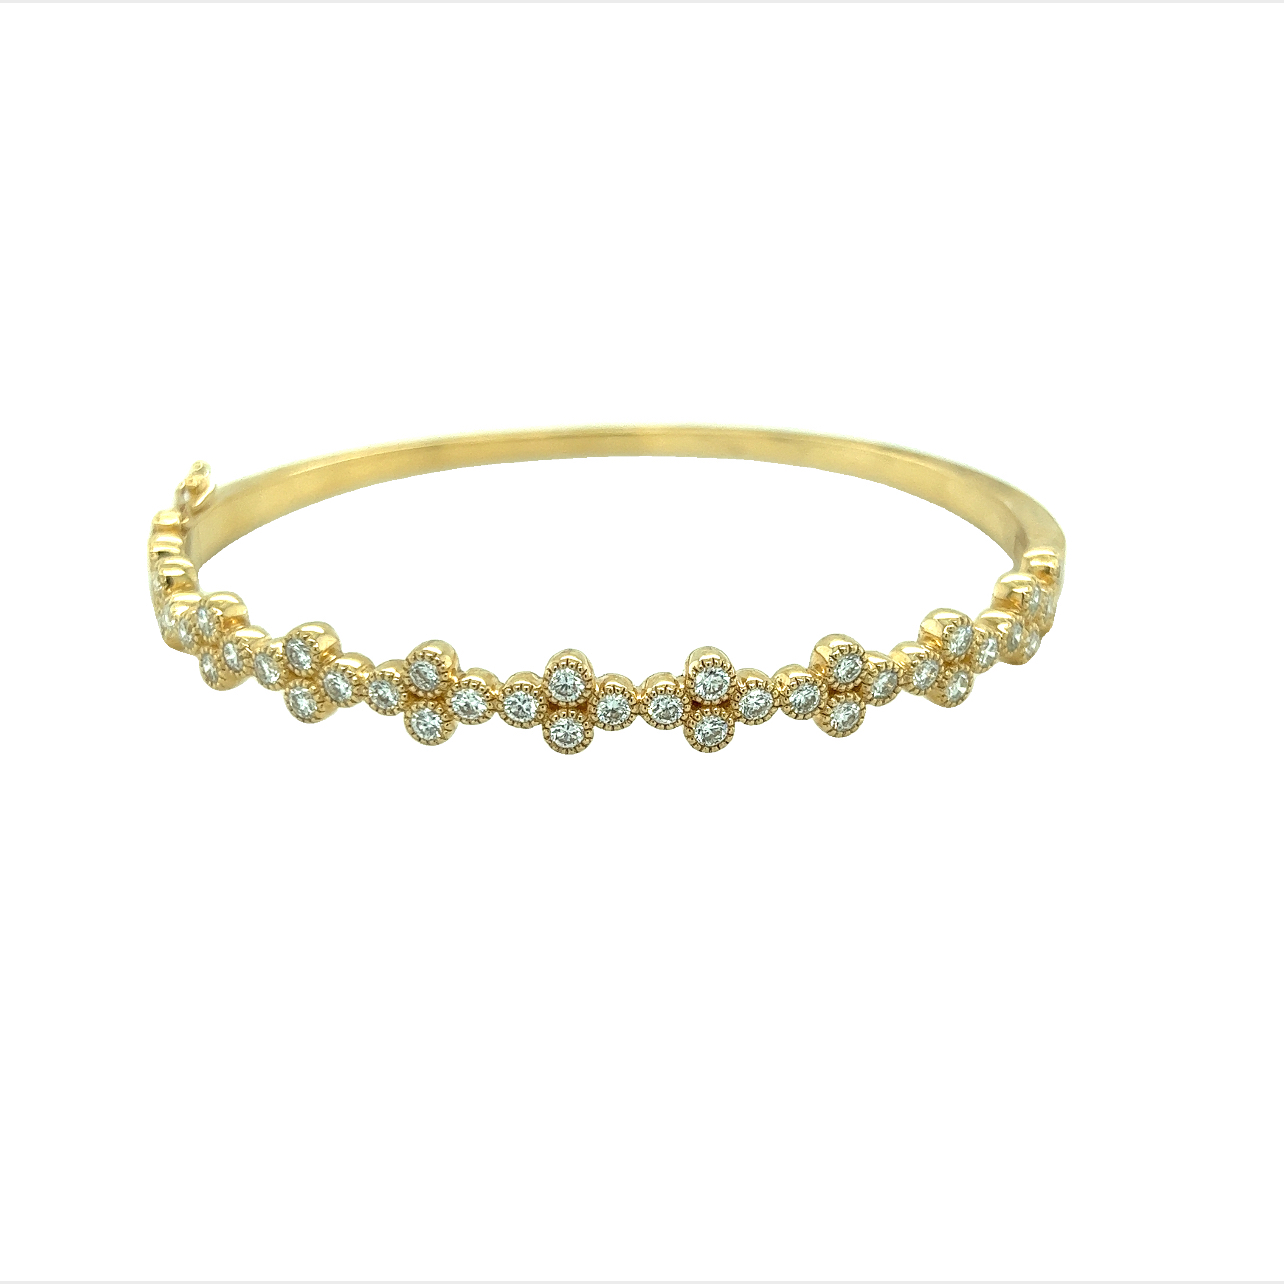 Featured image for “White Diamond Flower Bracelet”